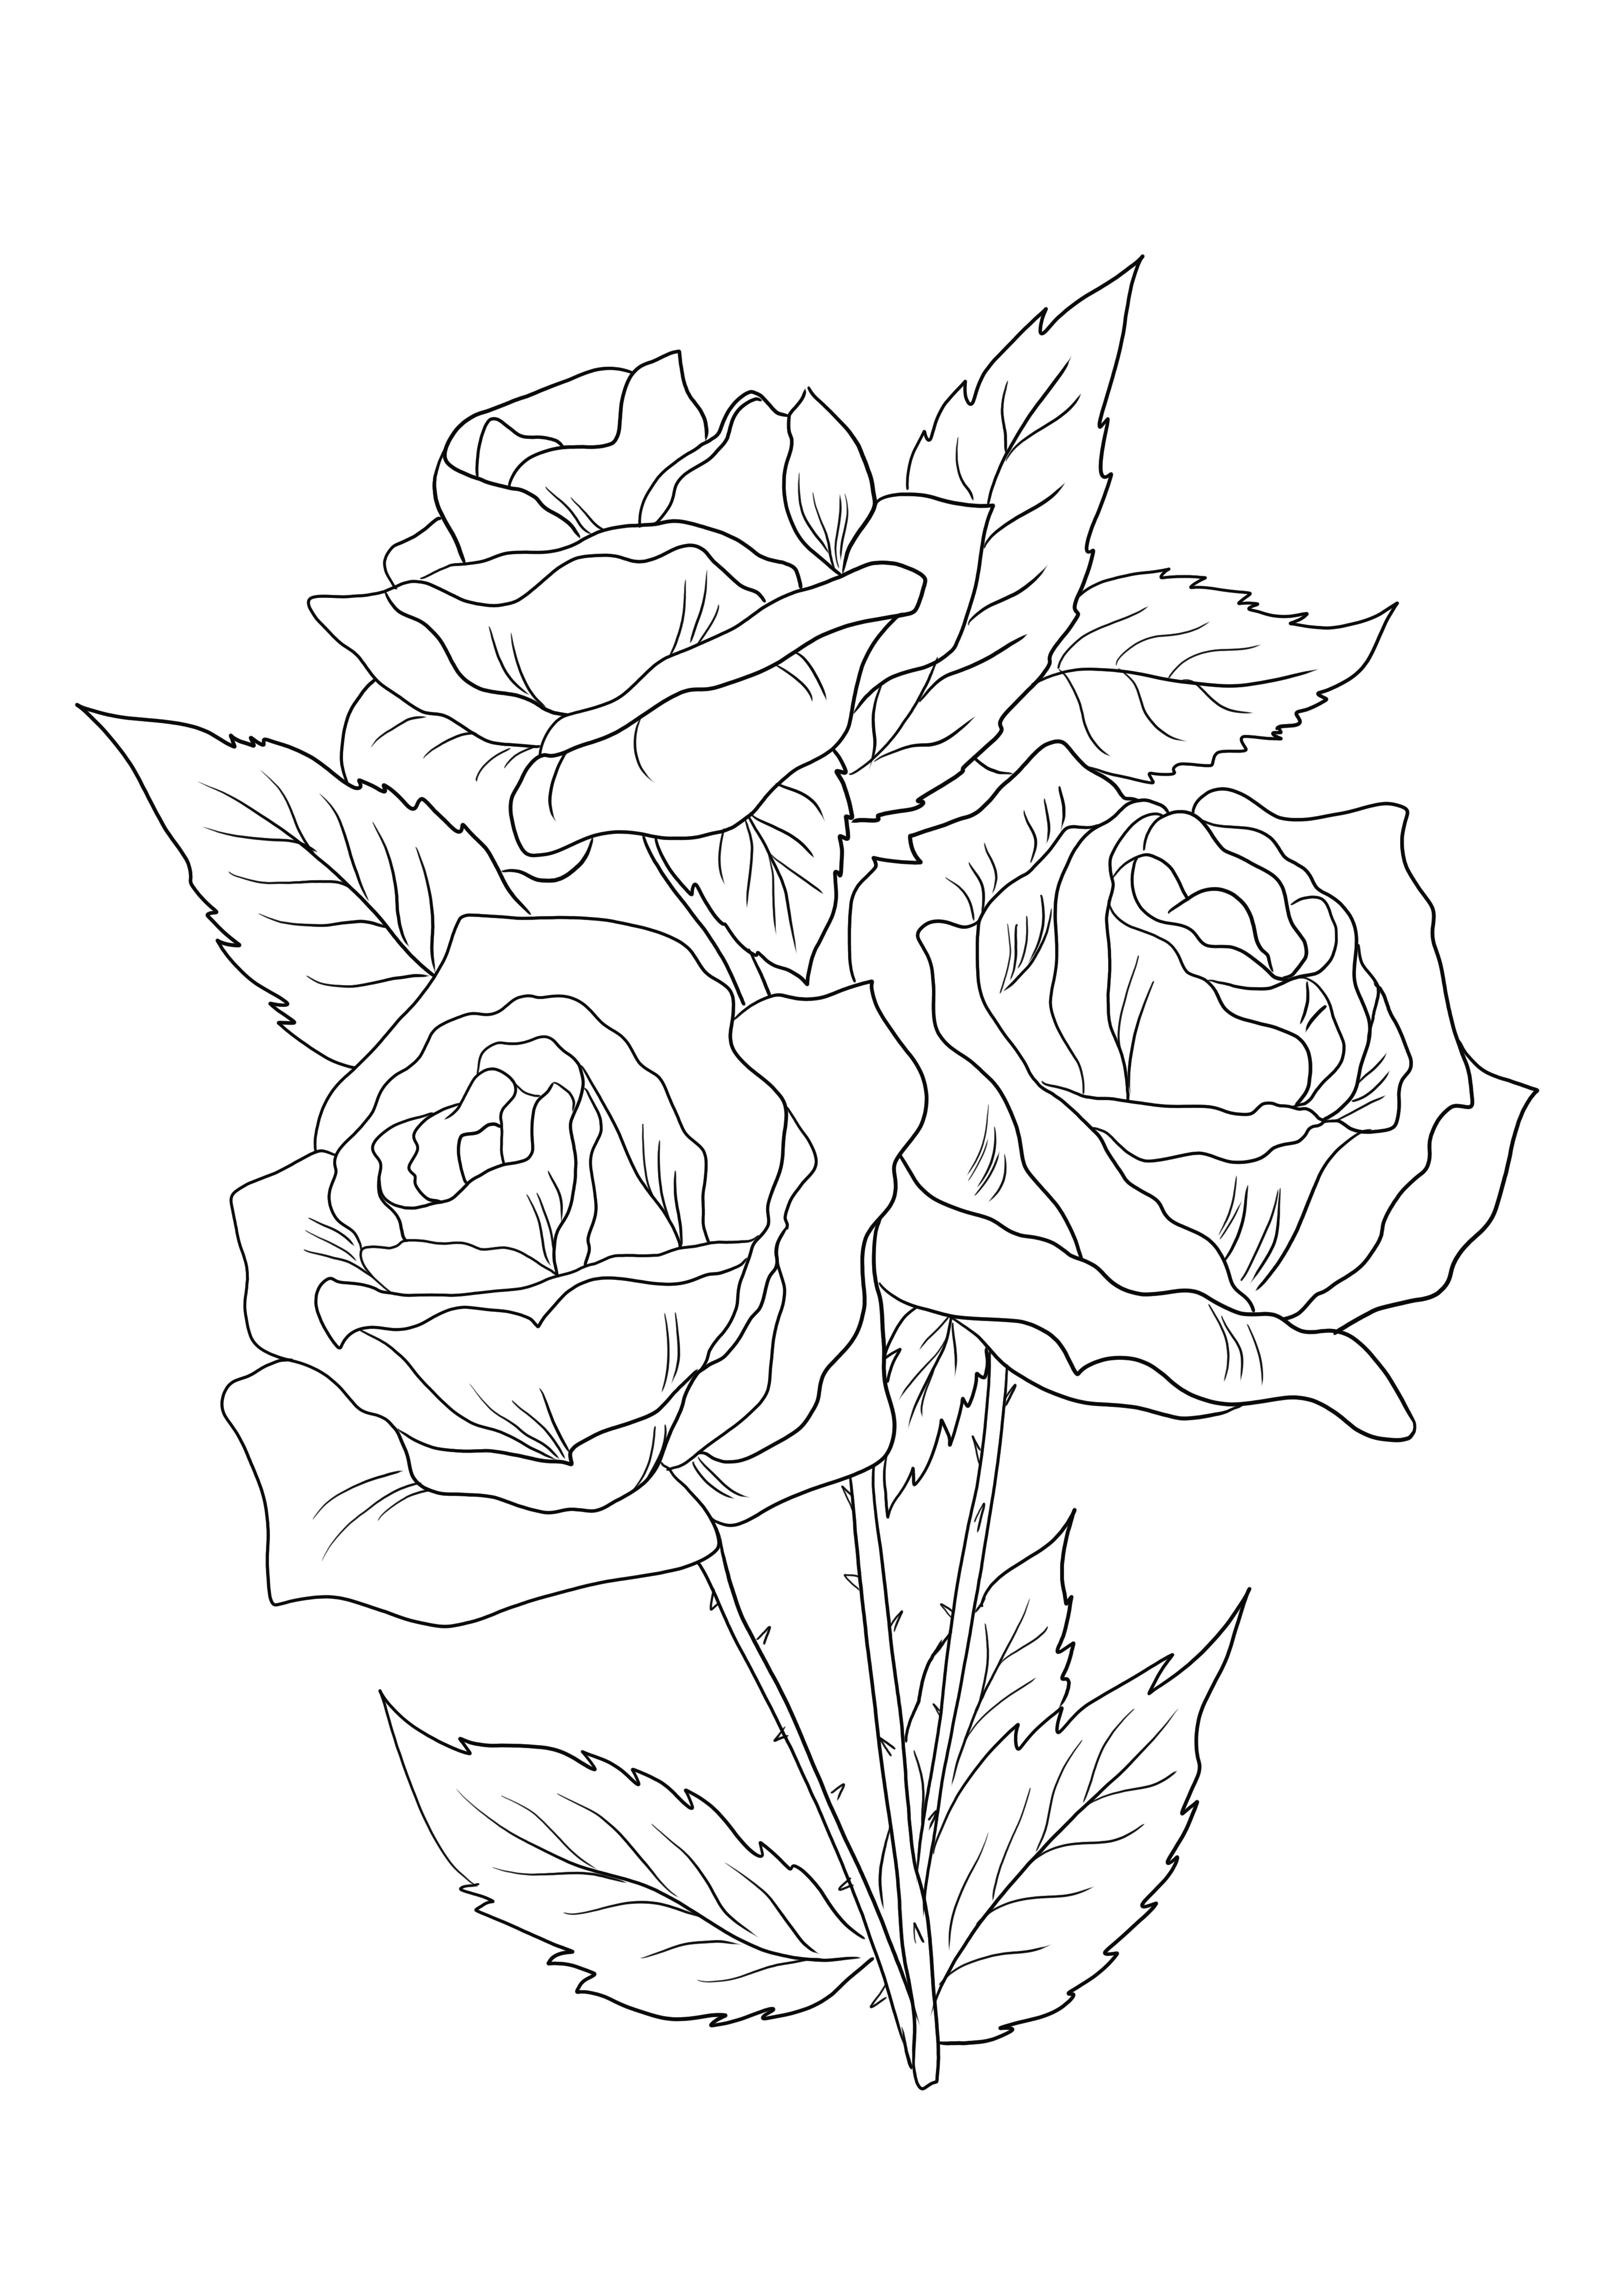 Három virágzó rózsa ingyenesen letölthető és kiszínezhető, és megismerkedhet a virágokkal